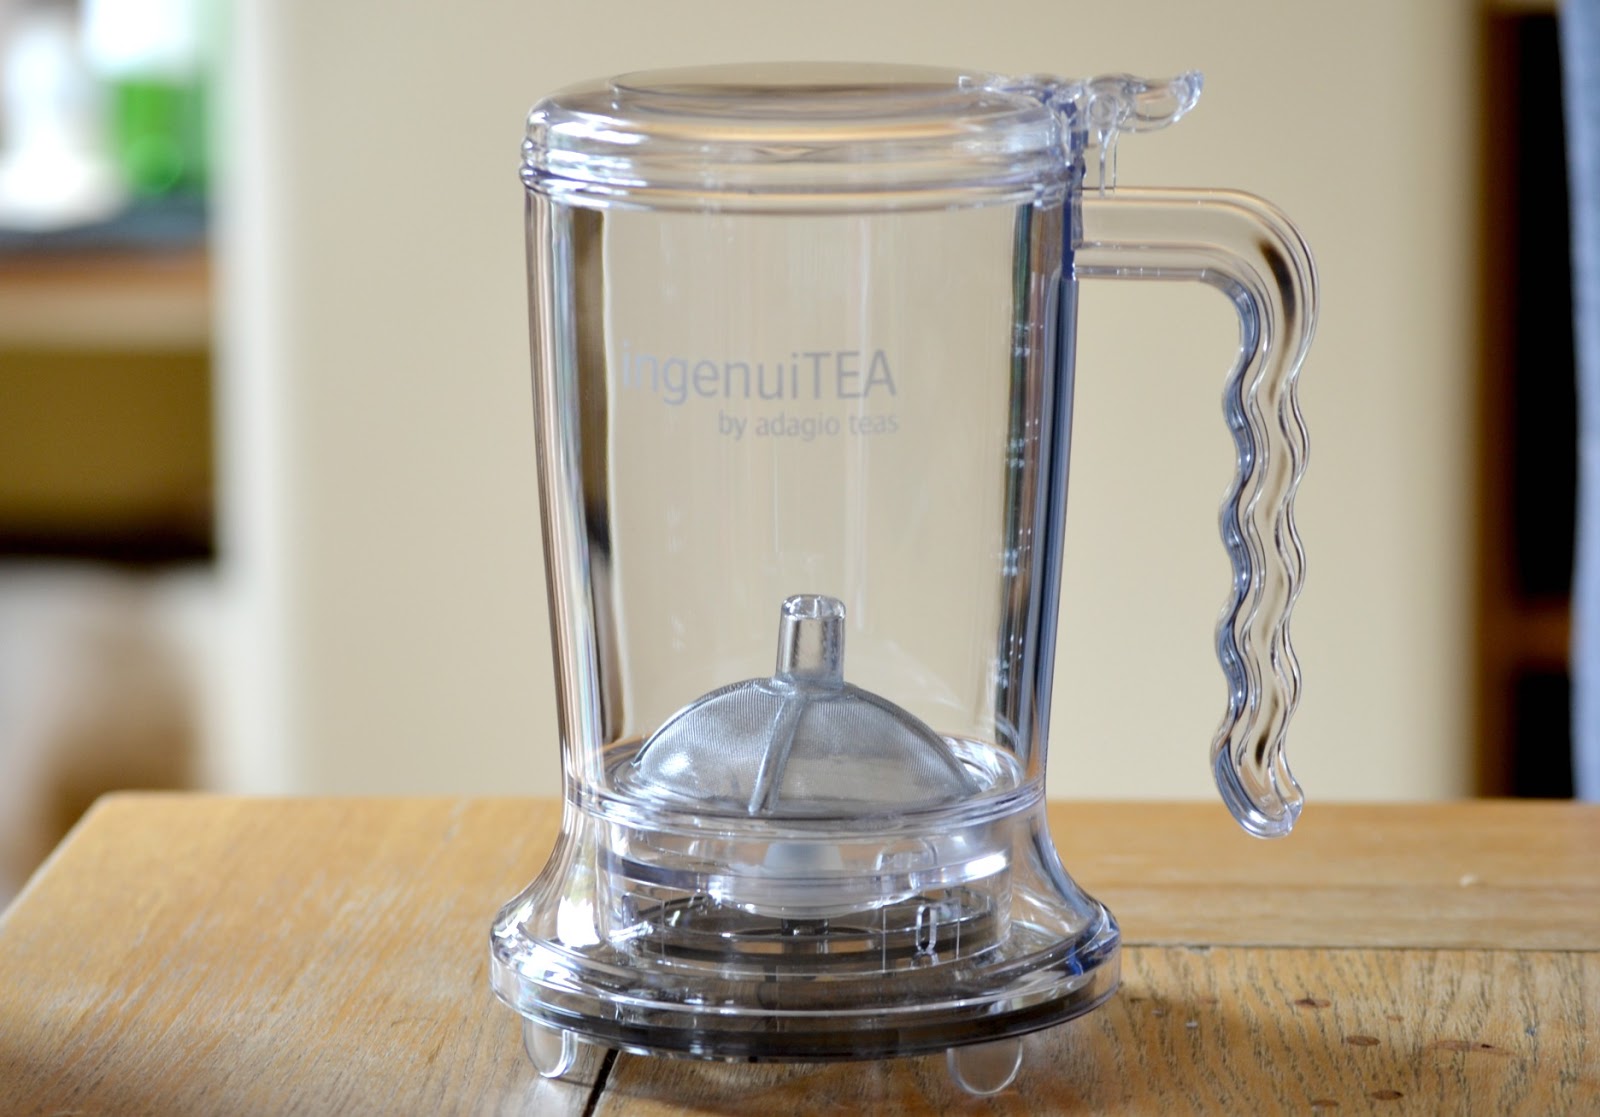 Adagio IngenuiTEA Teapot, 16 oz